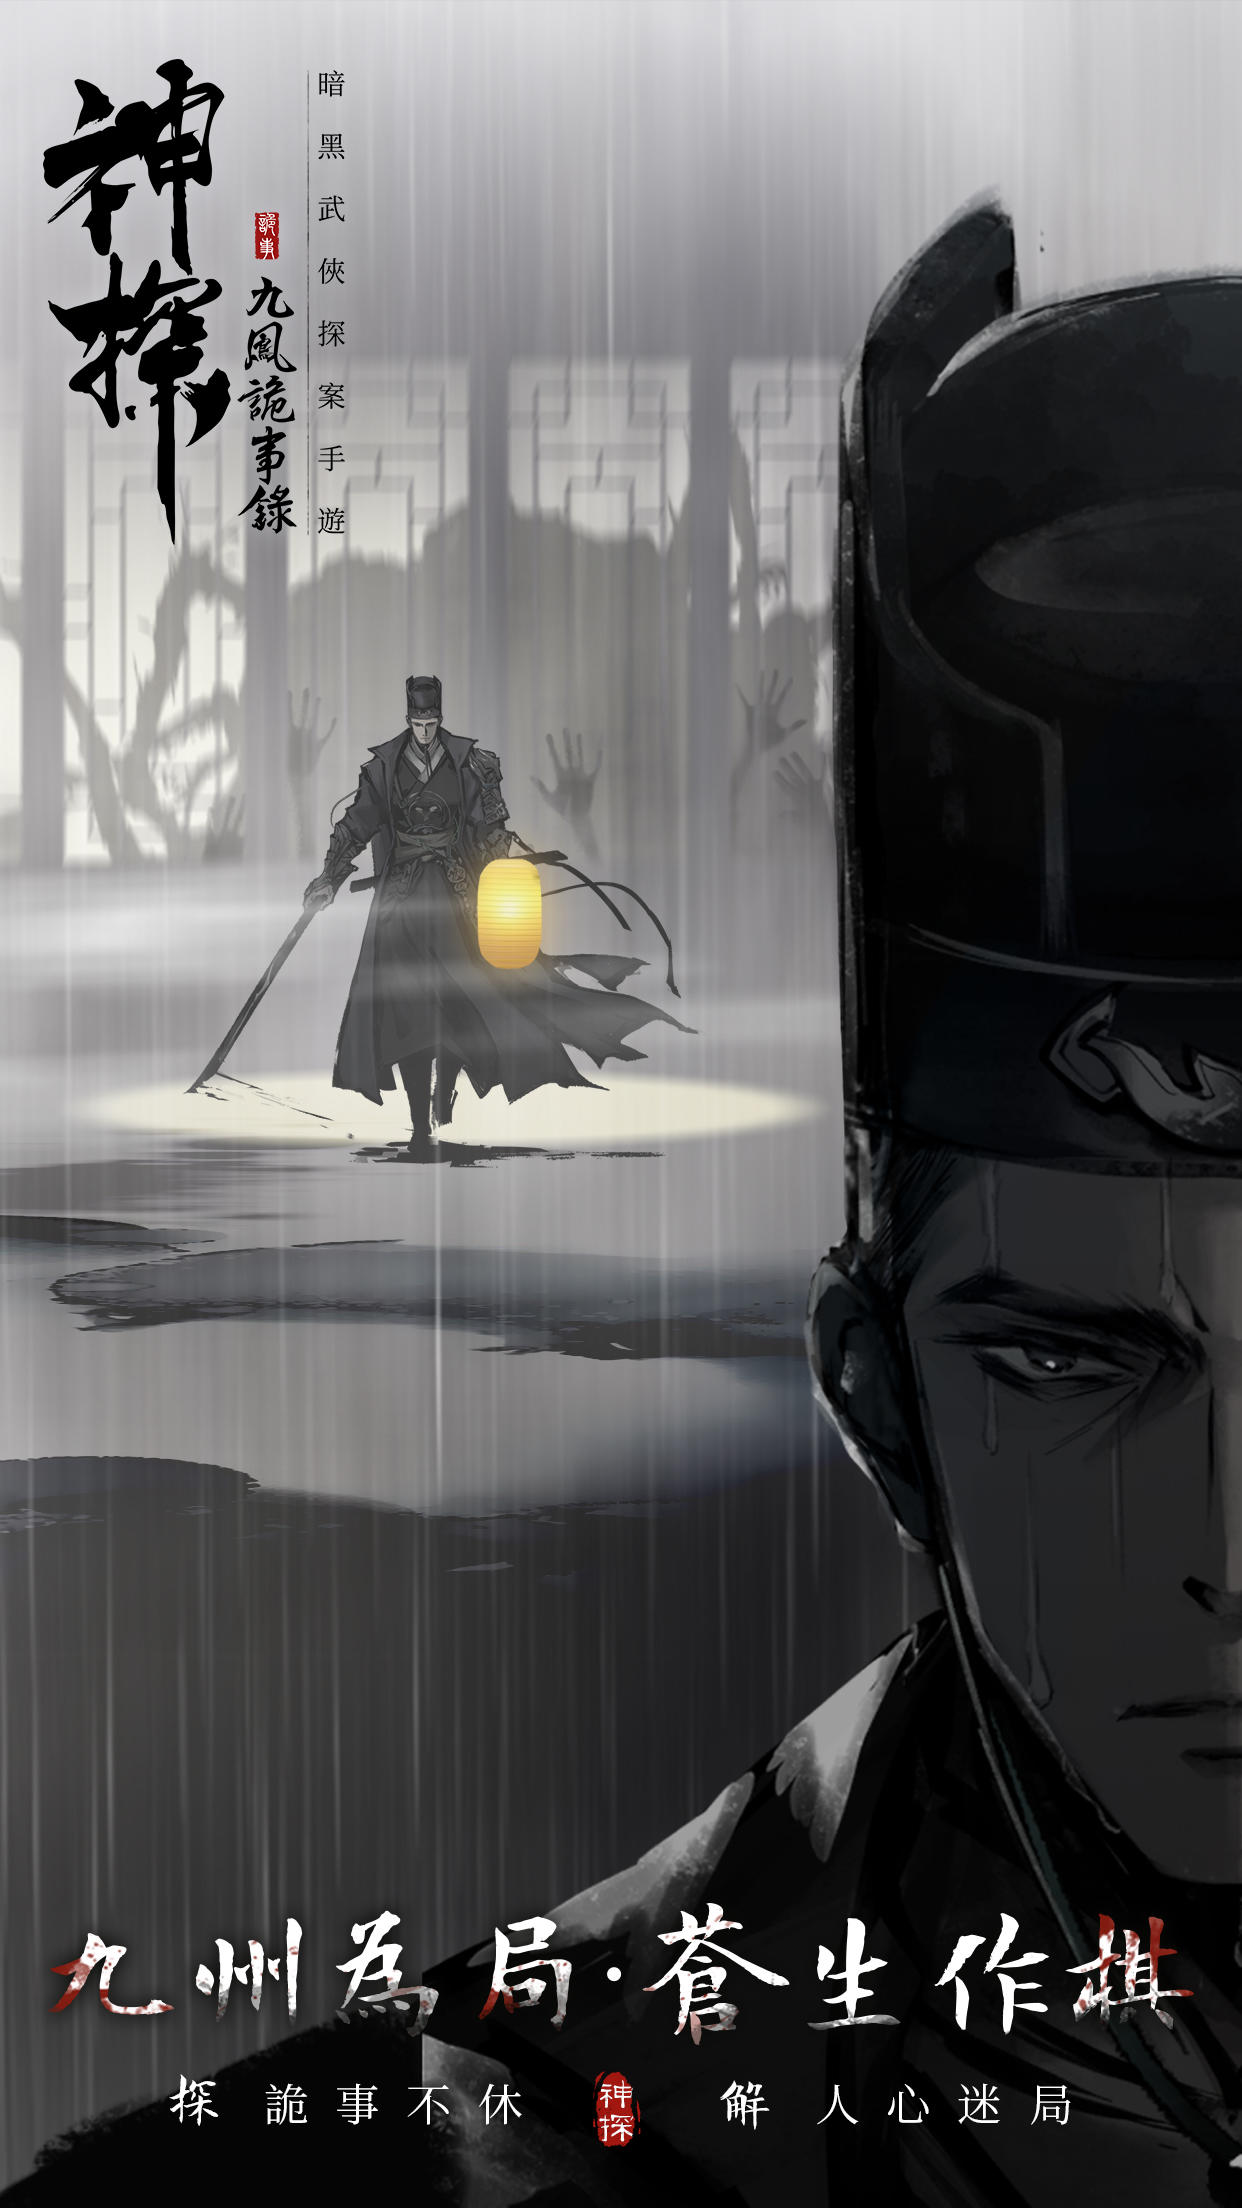 Screenshot 1 of Thám tử: Những câu chuyện kì lạ của Cửu Phong 